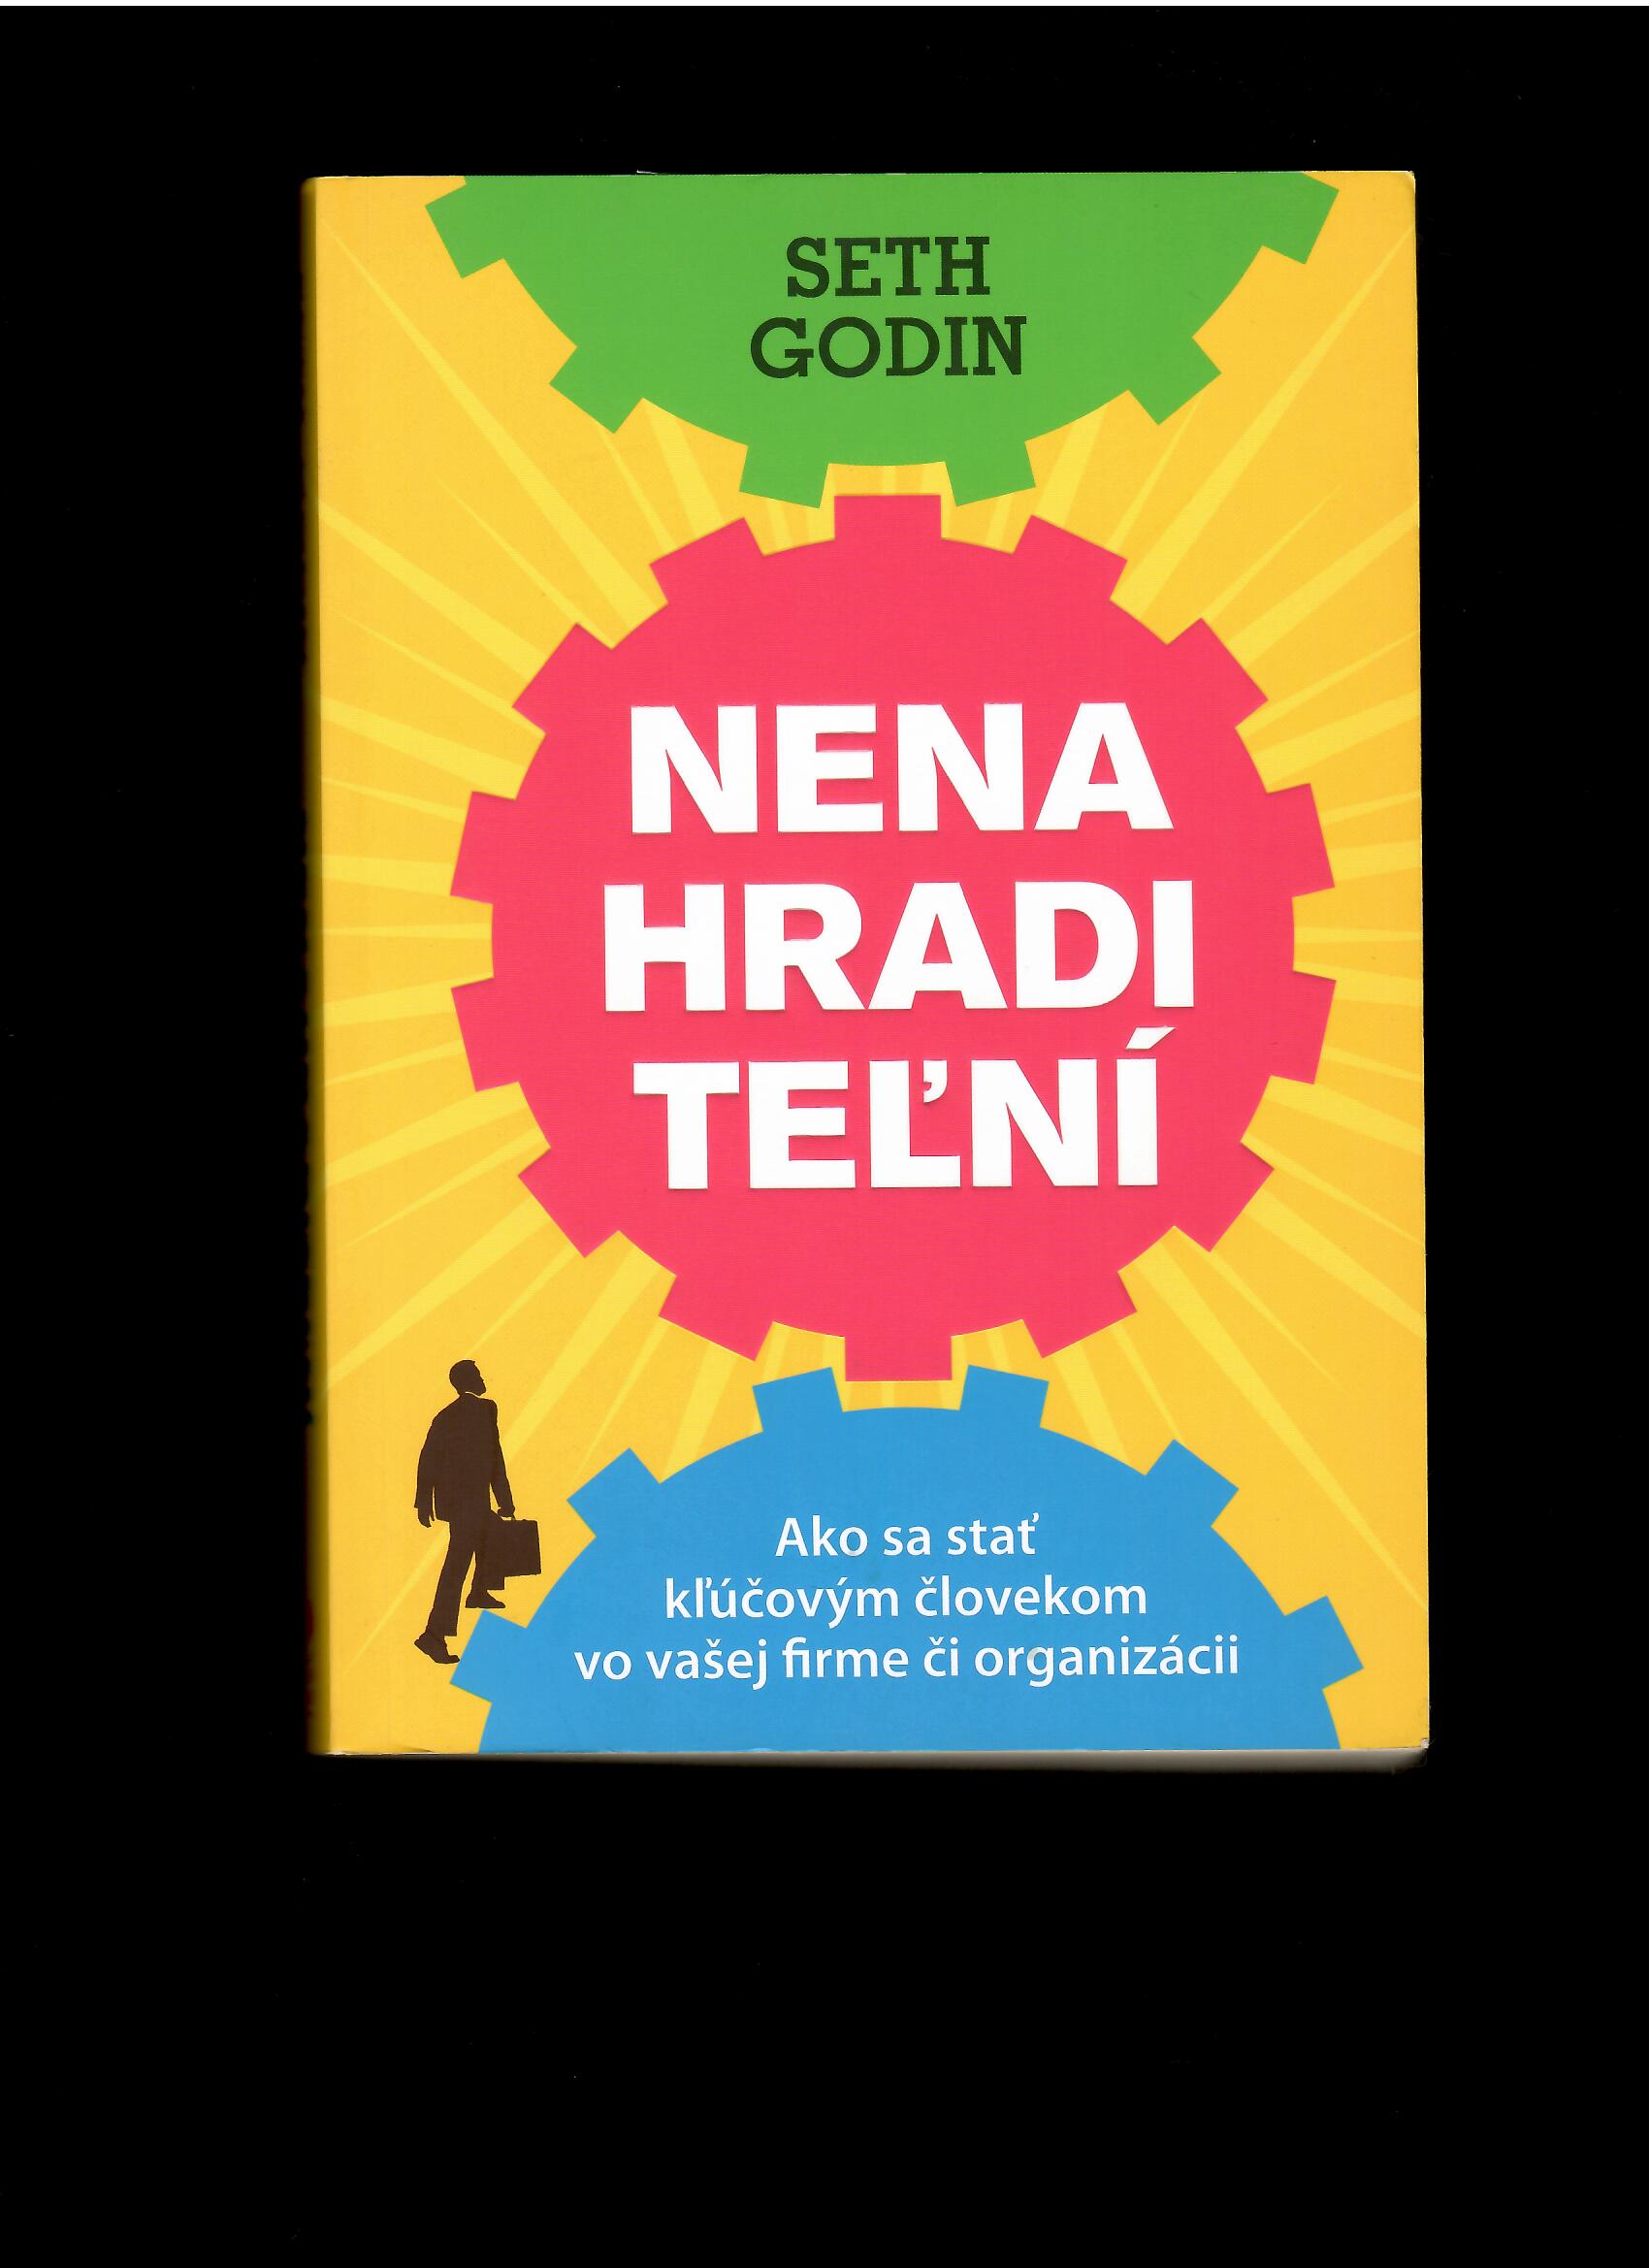 Seth Godin: Nenahraditeľní